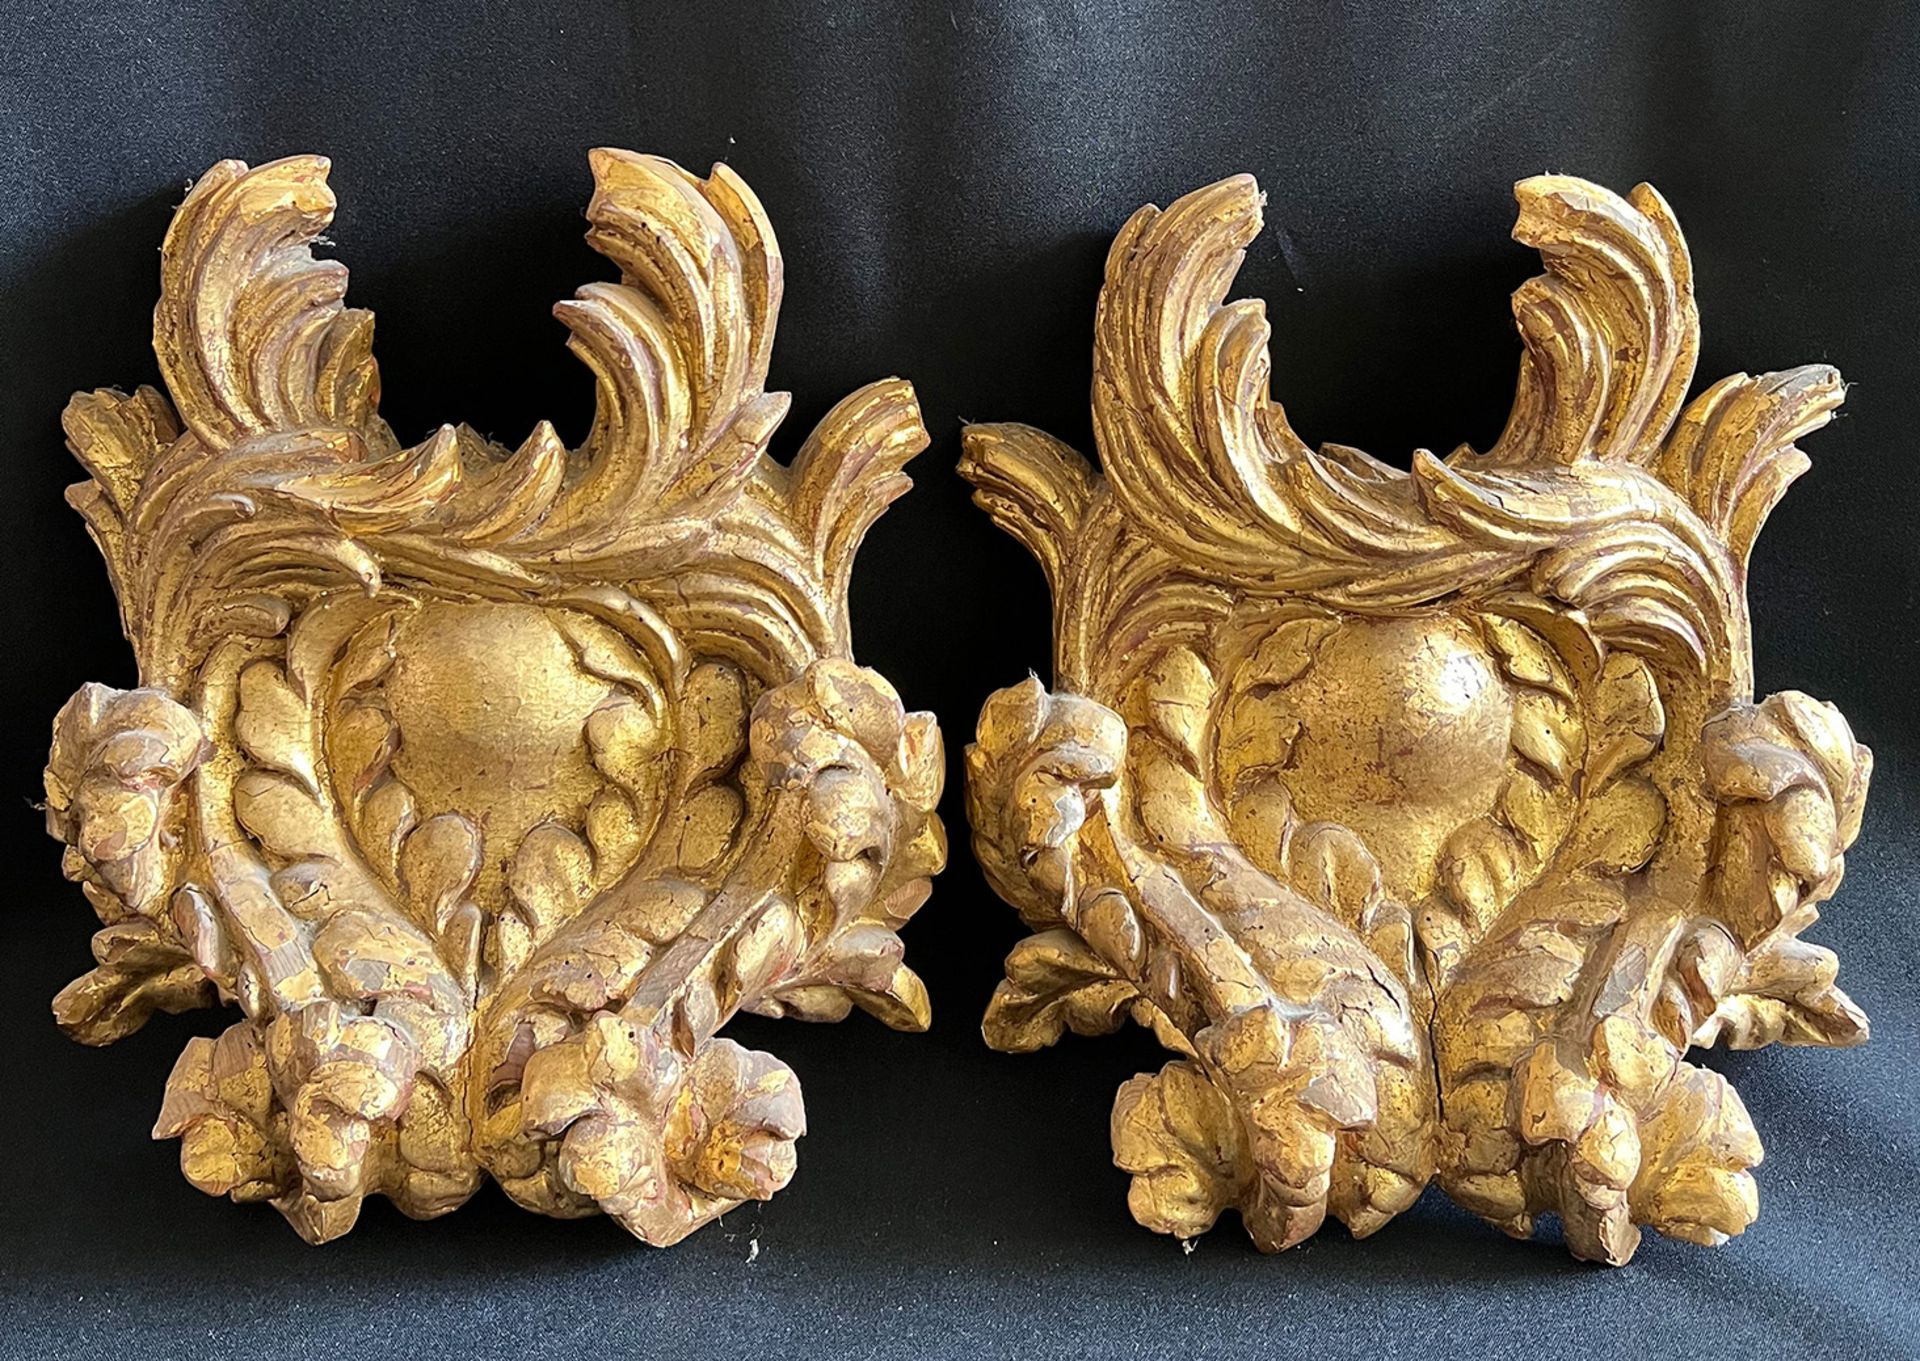 2 Ornamente, Barock, 18. Jh., aufwändig geschnitzt, Holz, vergoldet, Altersspuren, 1 x rücks. - Bild 2 aus 6